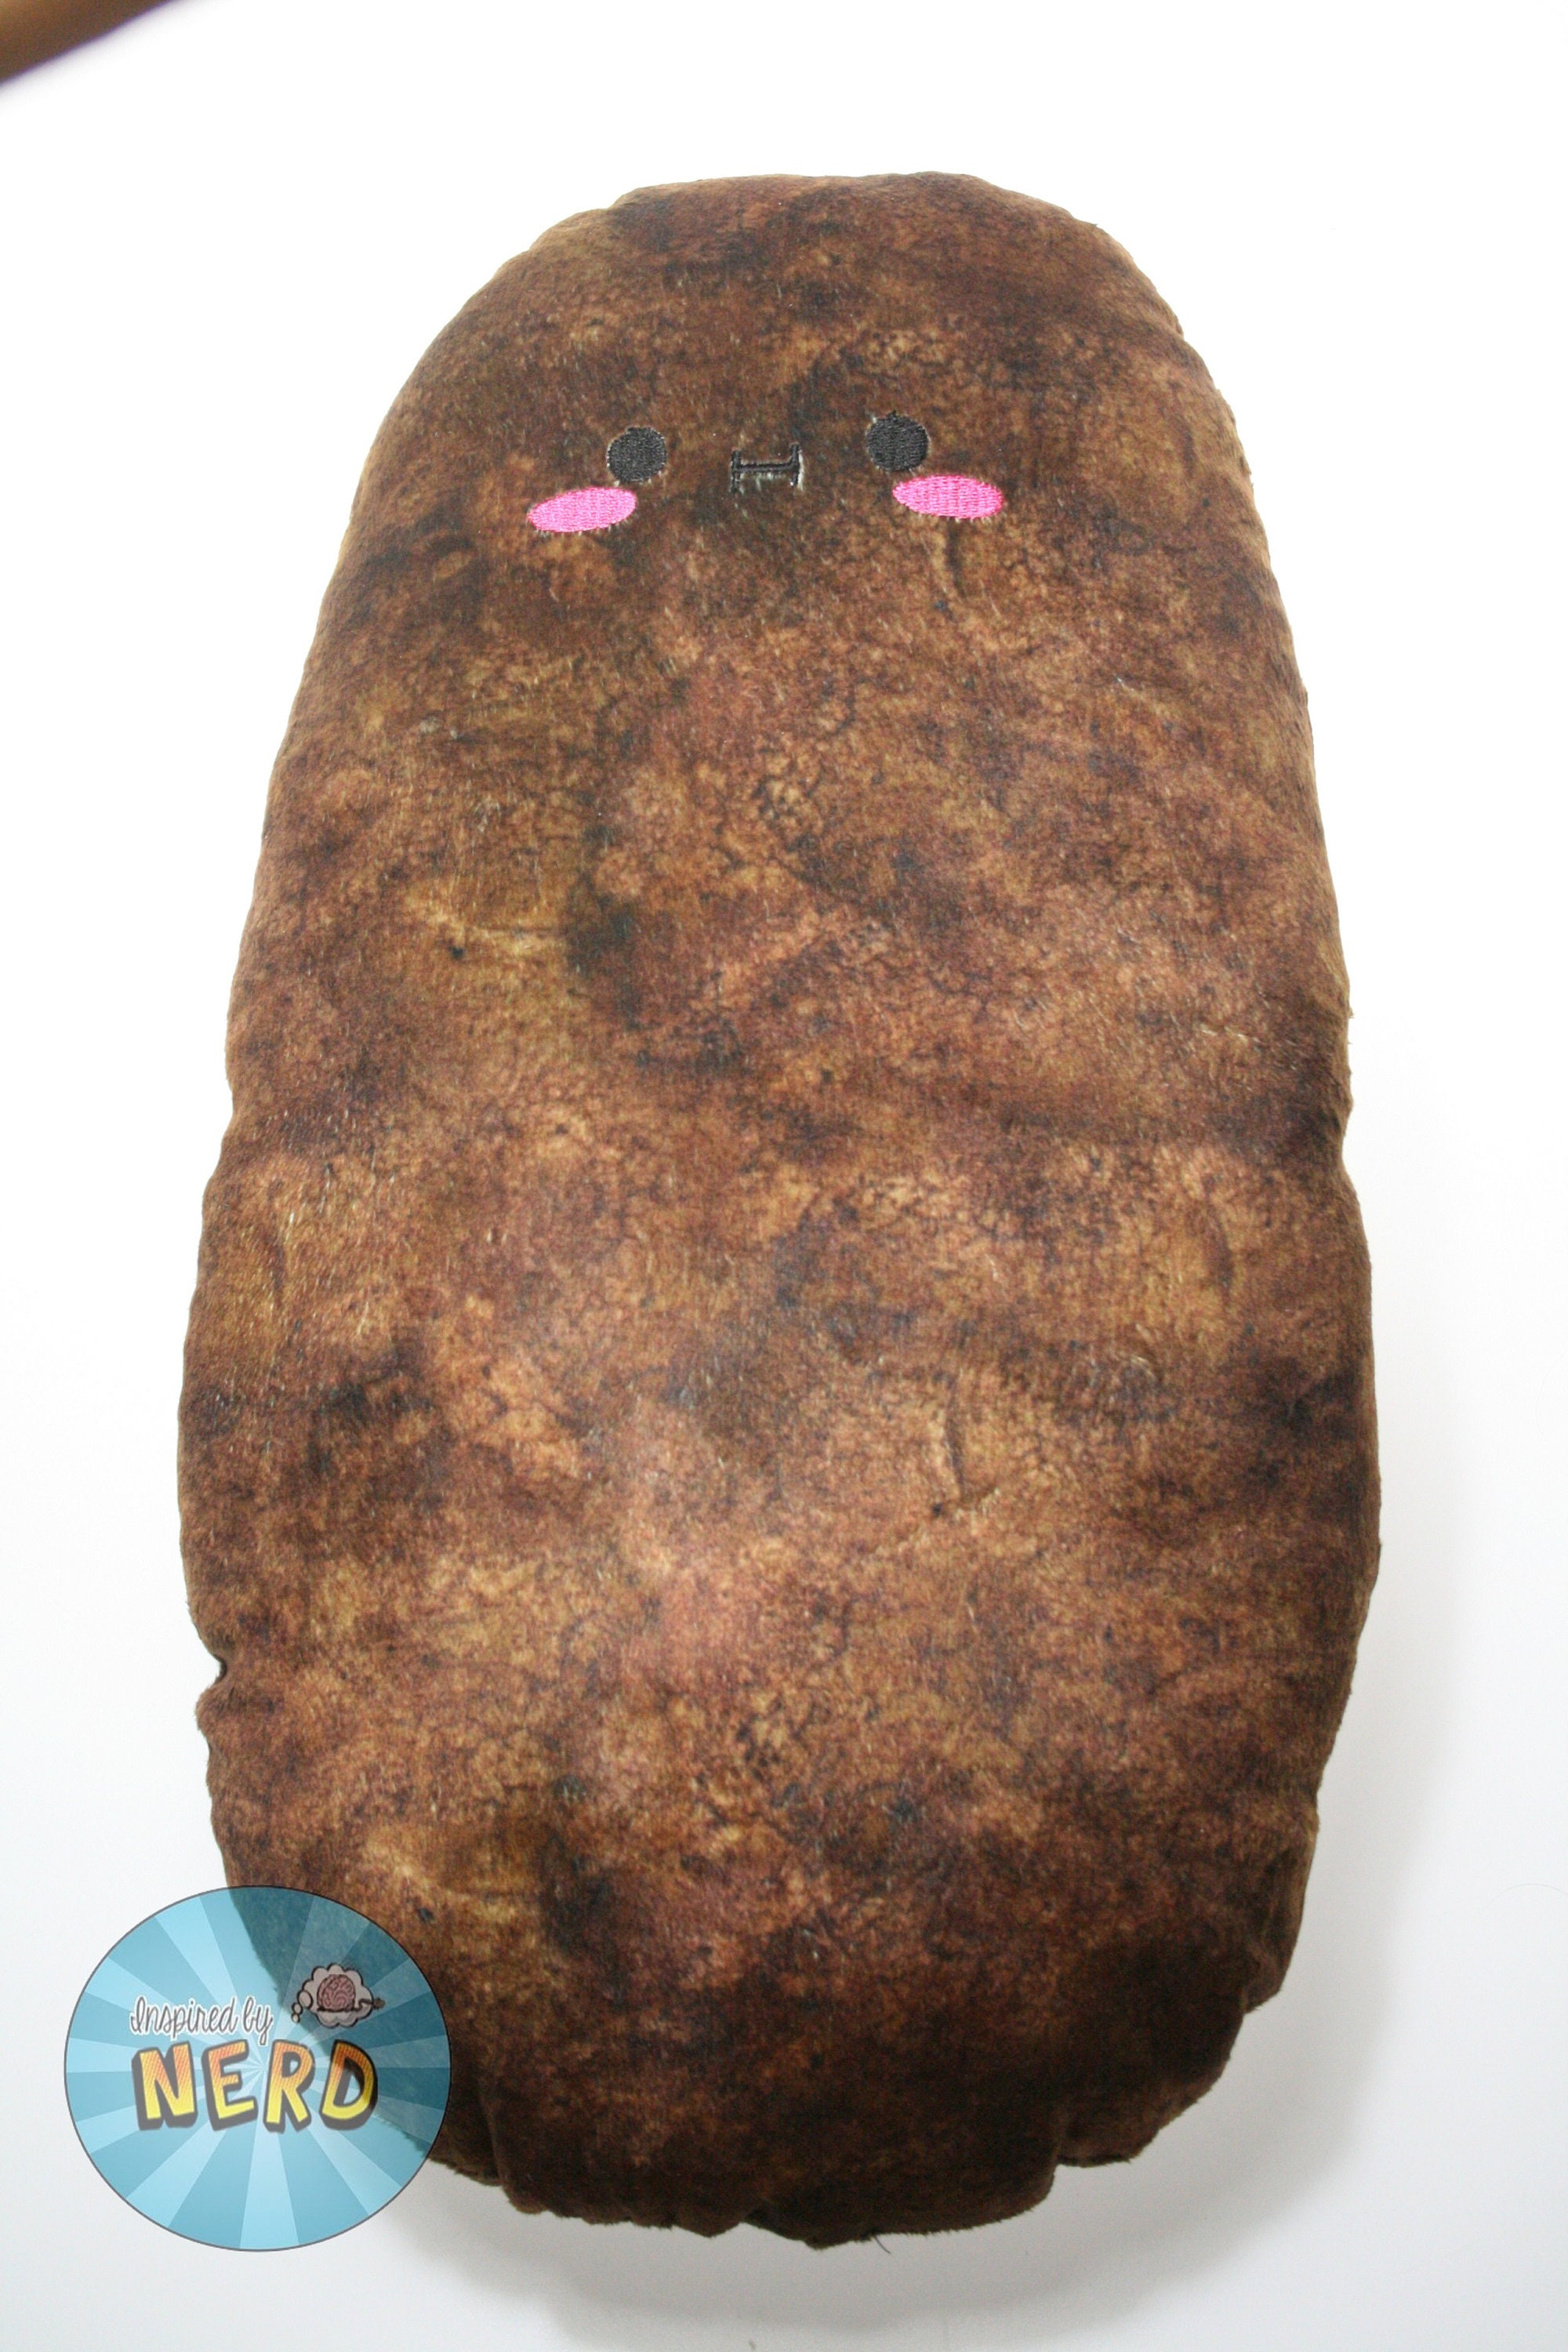 IDAHO Famous Potatoes POTATO BUDDY 16 Plush Stuffed Animal Toy Advertising